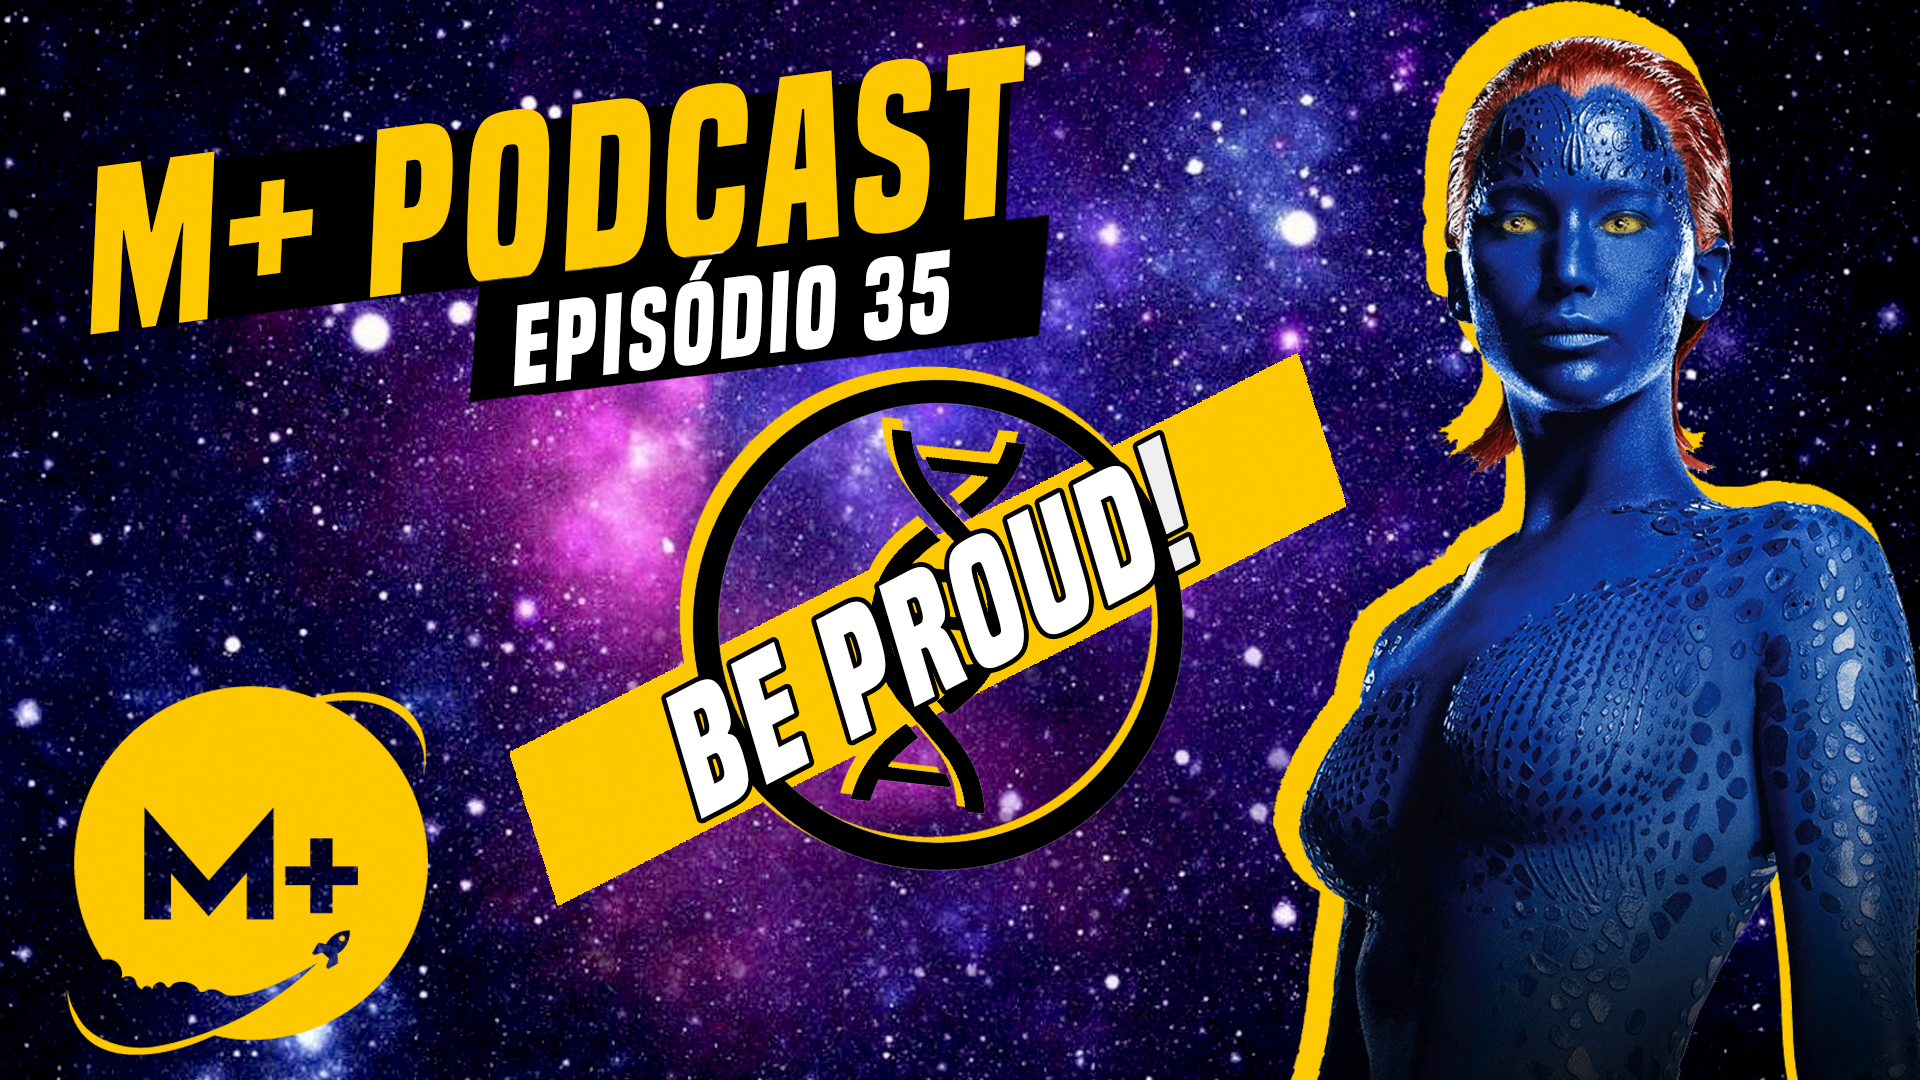 M+ Podcast 35 – Deadpool e seus X-men